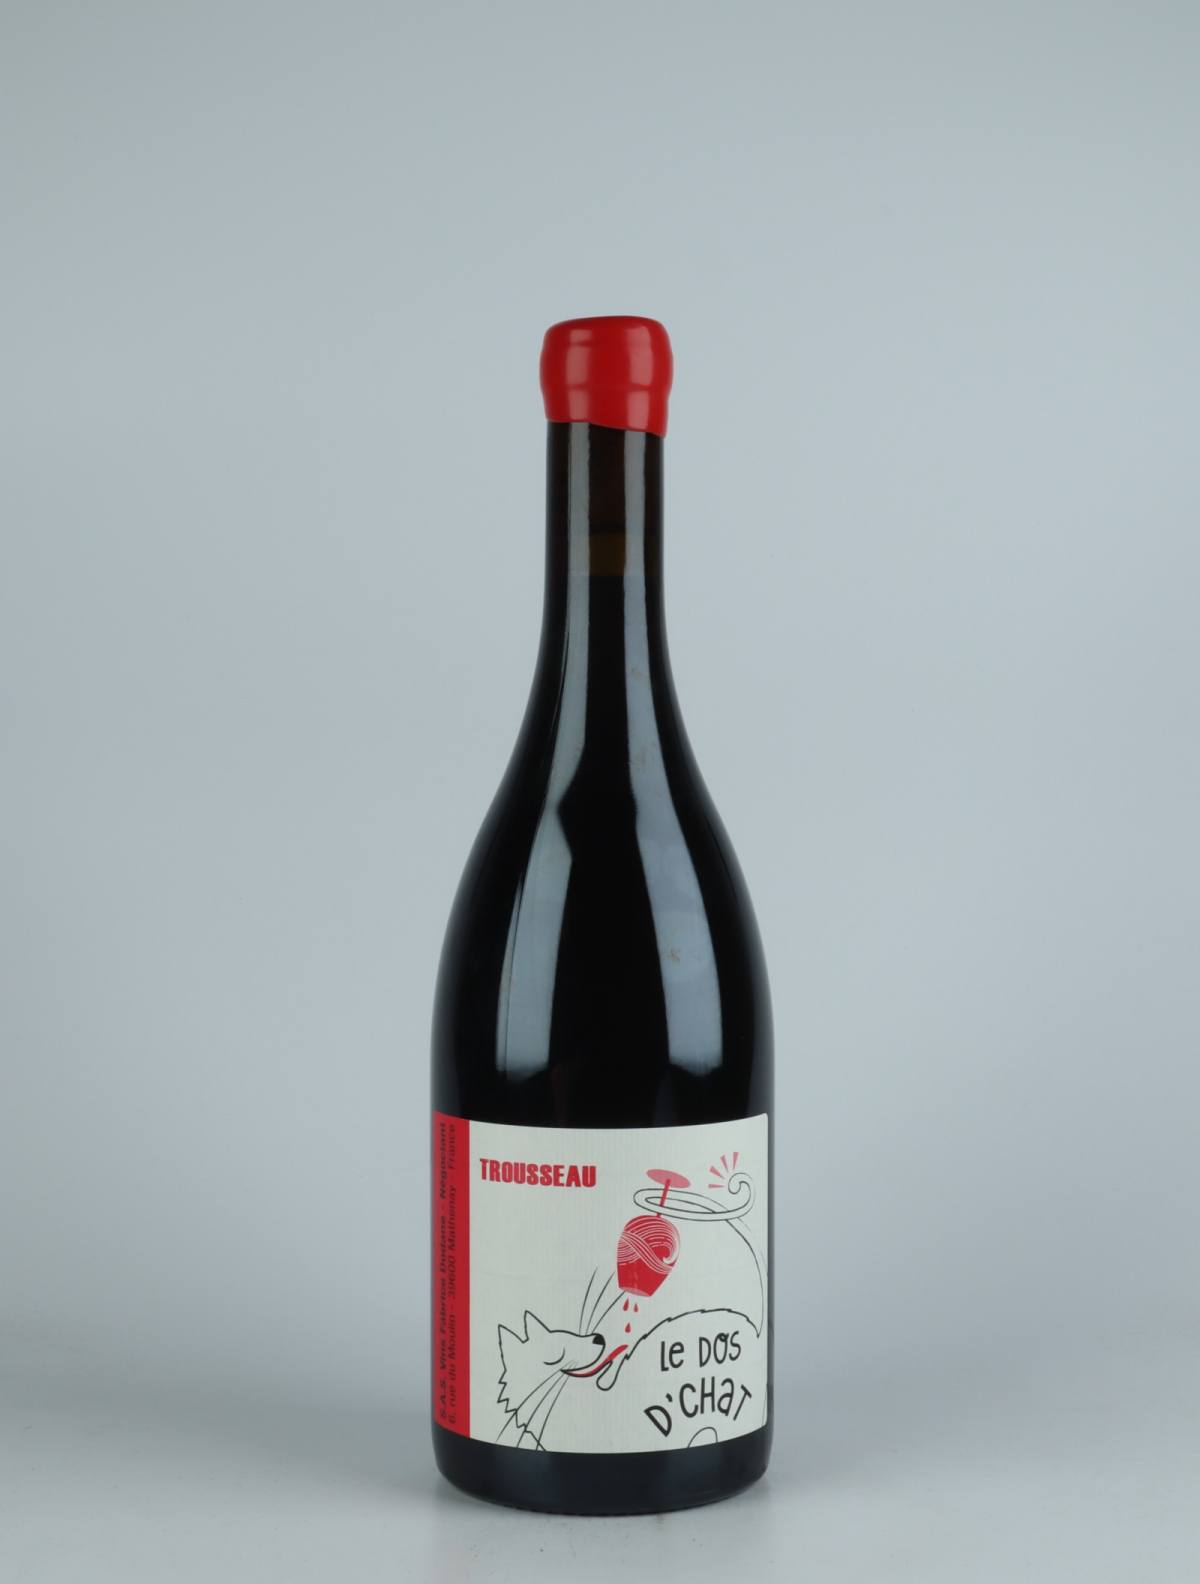 A bottle 2020 Côtes du Jura Rouge - Trousseau Red wine from Fabrice Dodane, Jura in France